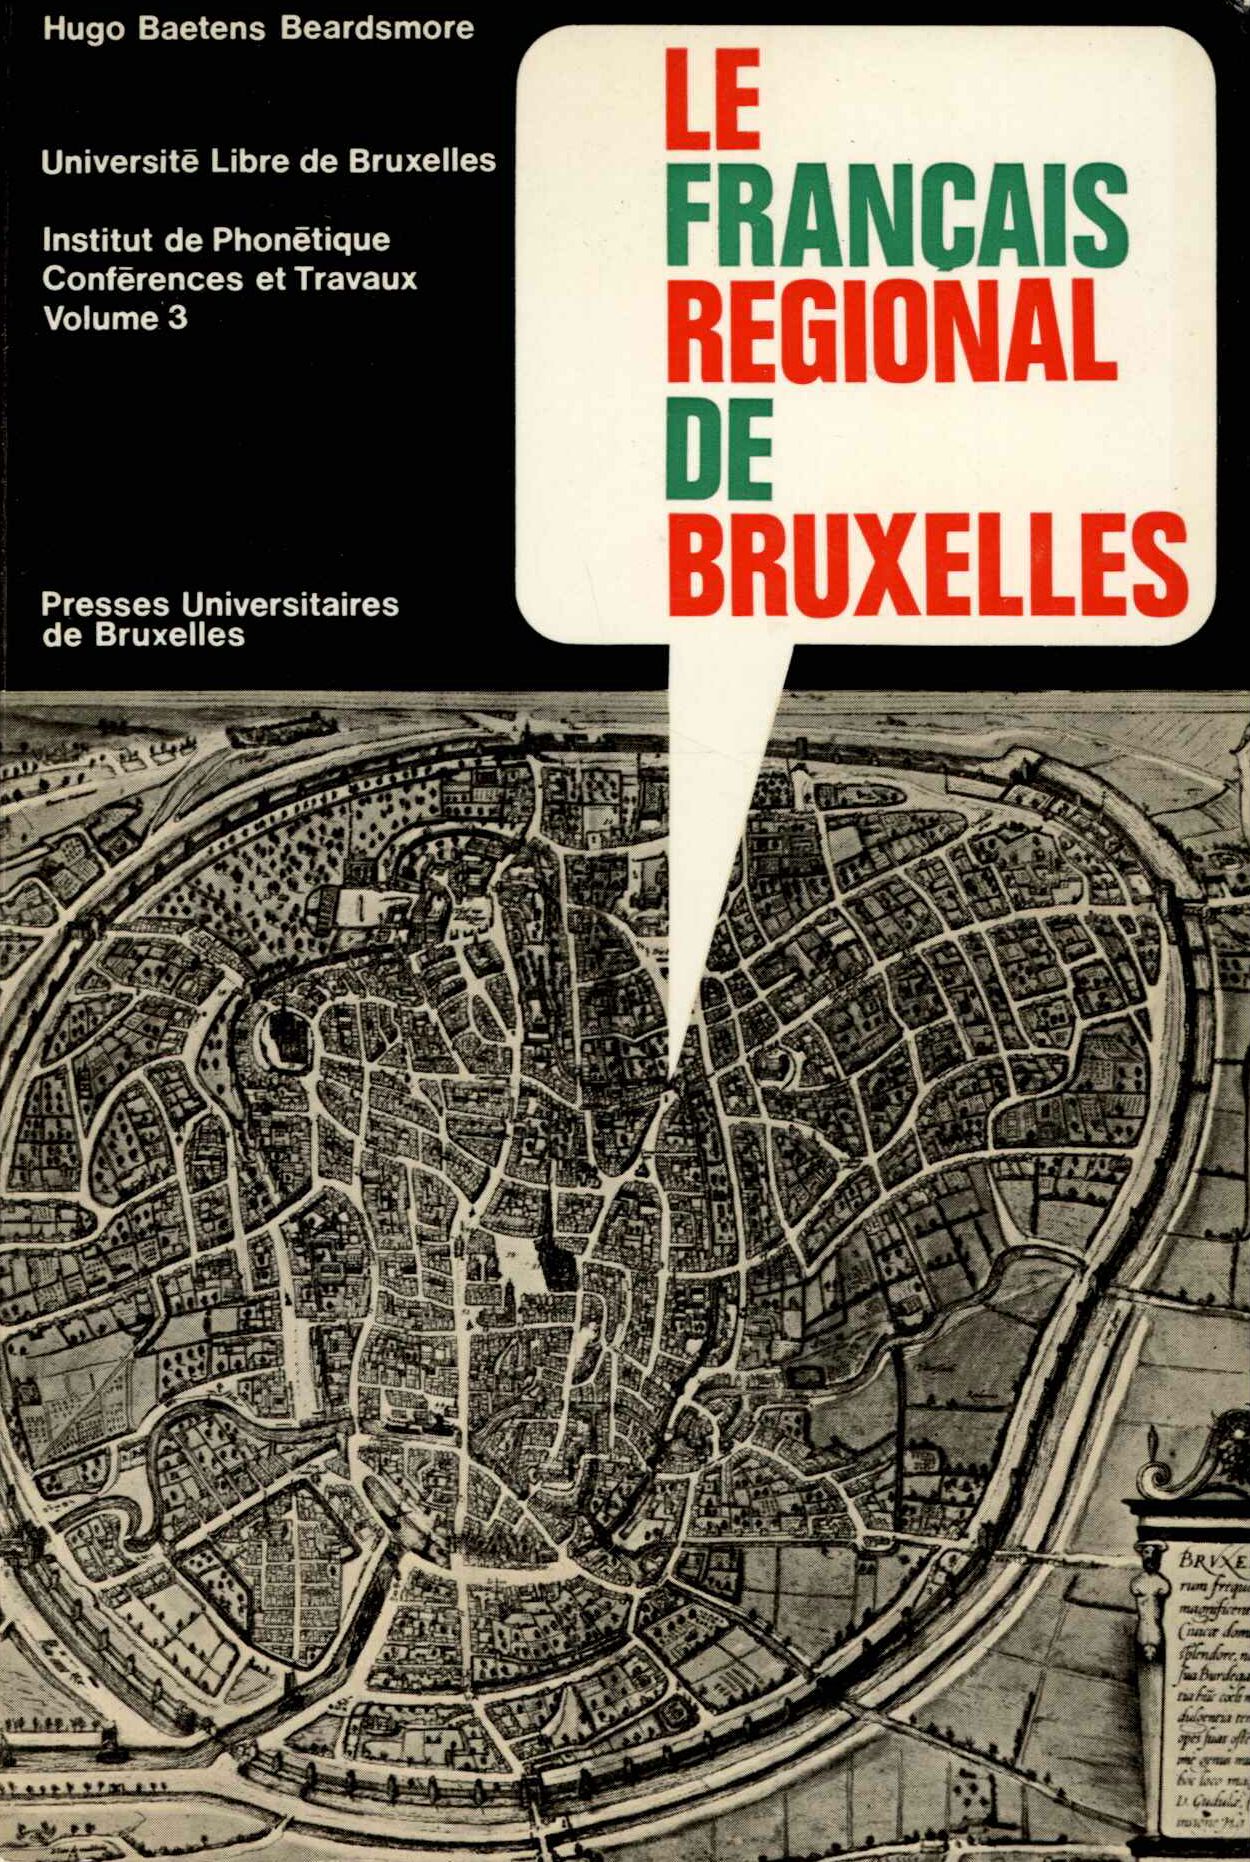 Le francais regional de Bruxelles